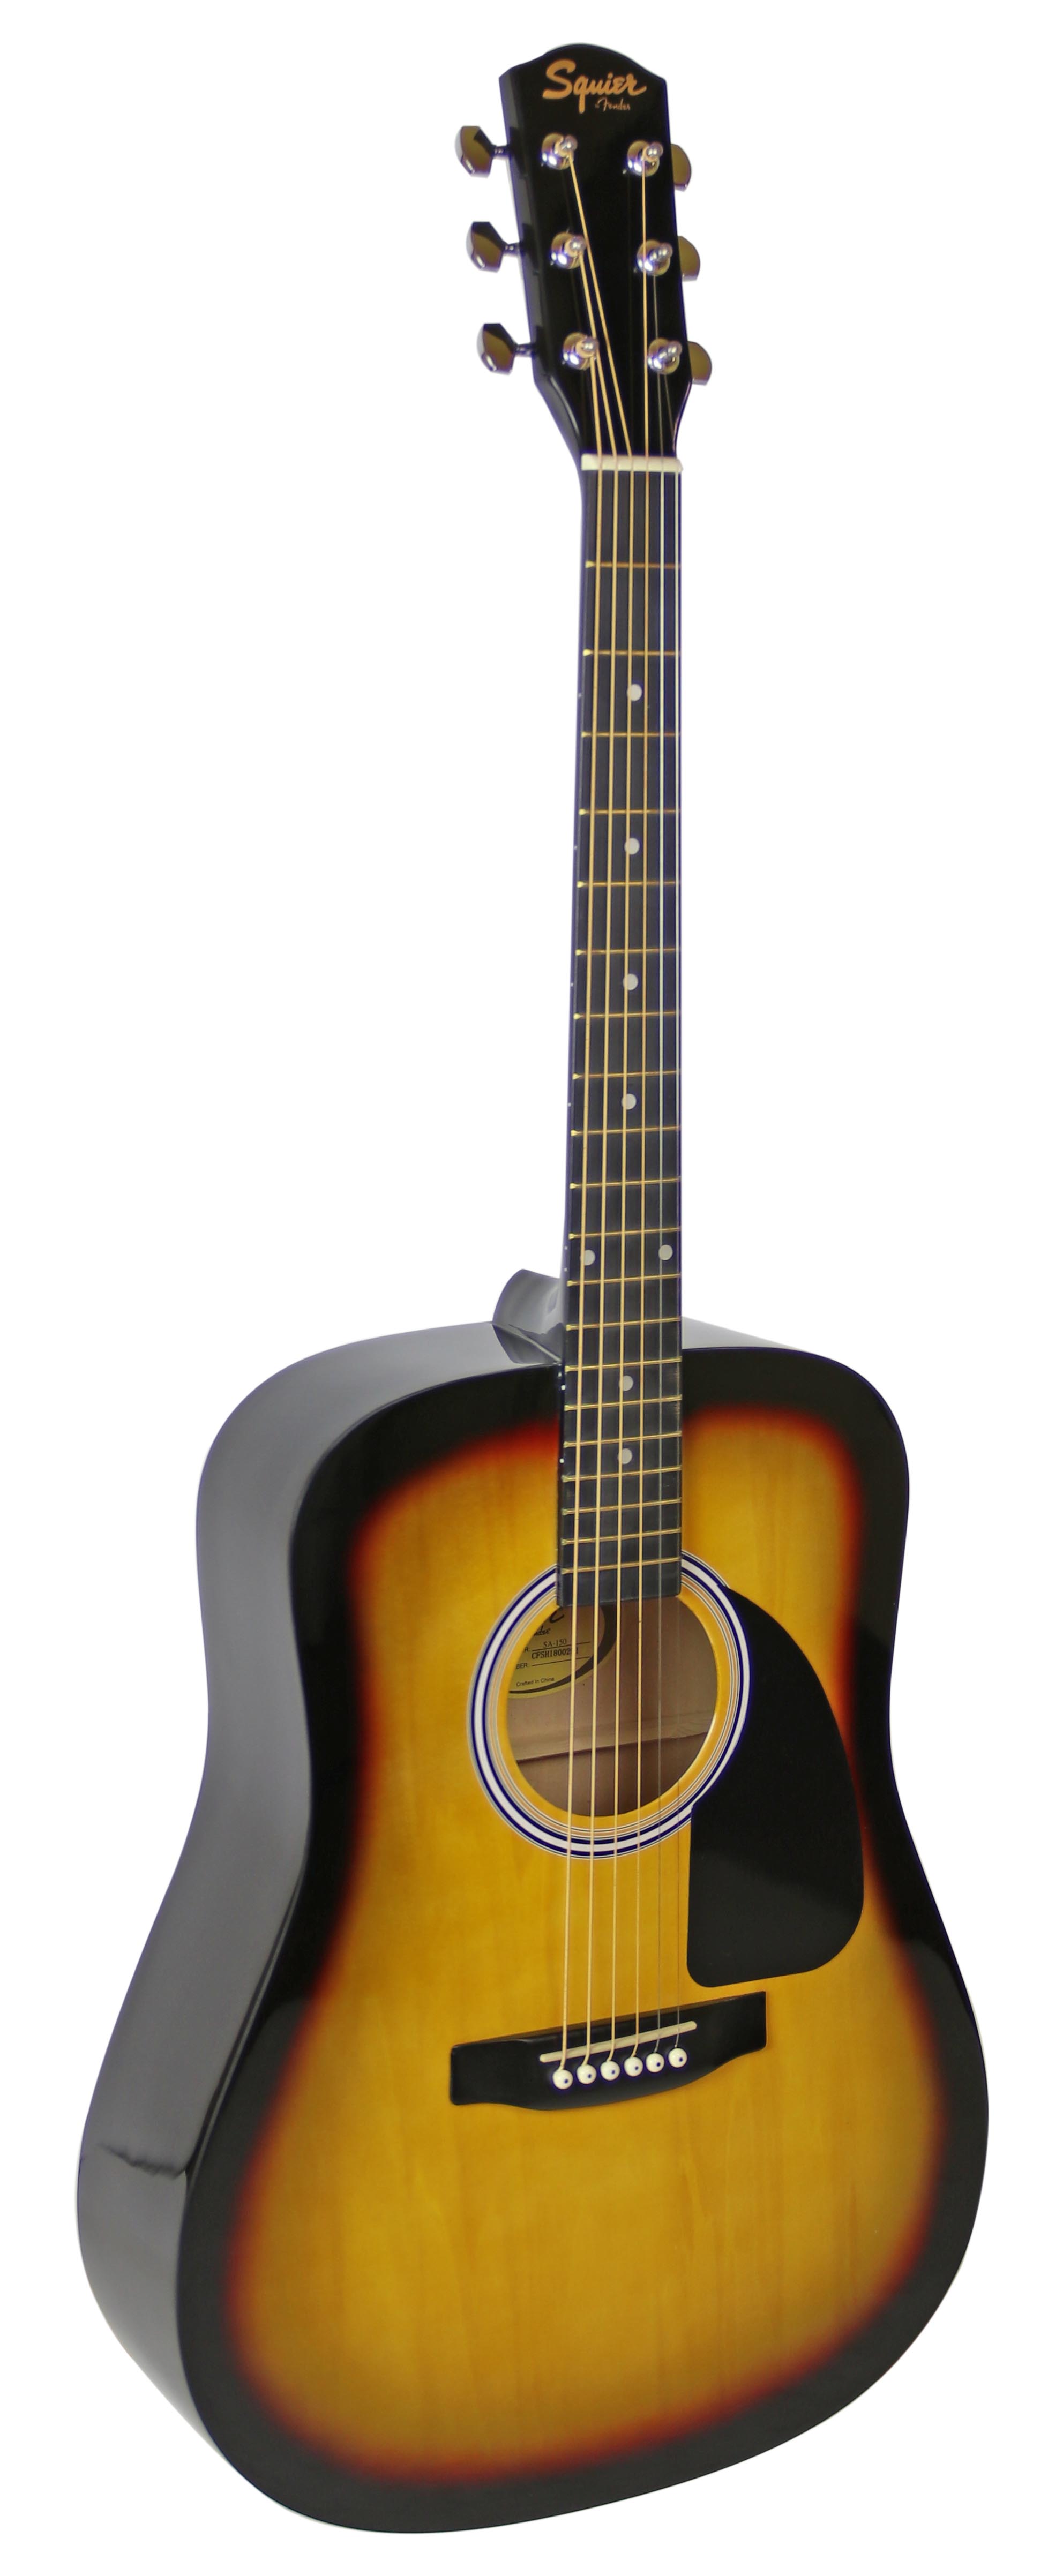 ::Fender Squier Dreadnought Acoustic Guitar - Sunburst